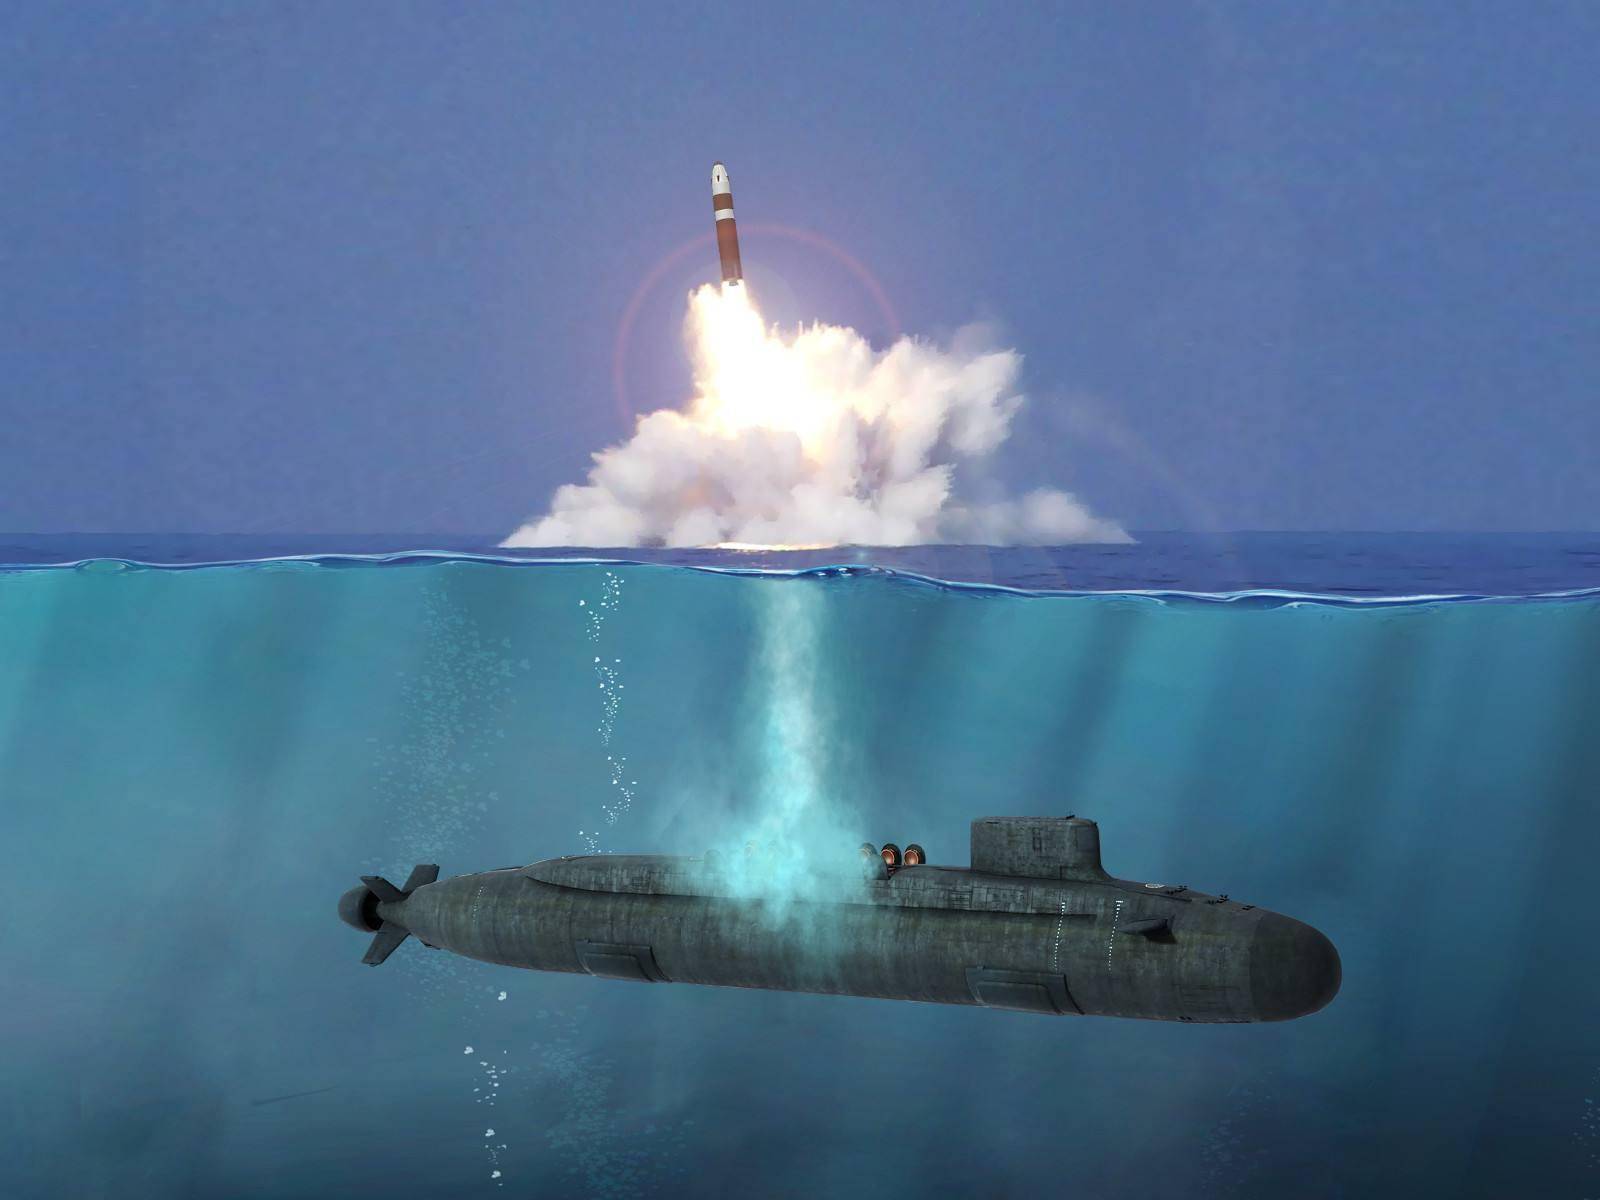 096战略核潜艇新消息:新洲际导弹核常兼备,携带上百枚巡航导弹